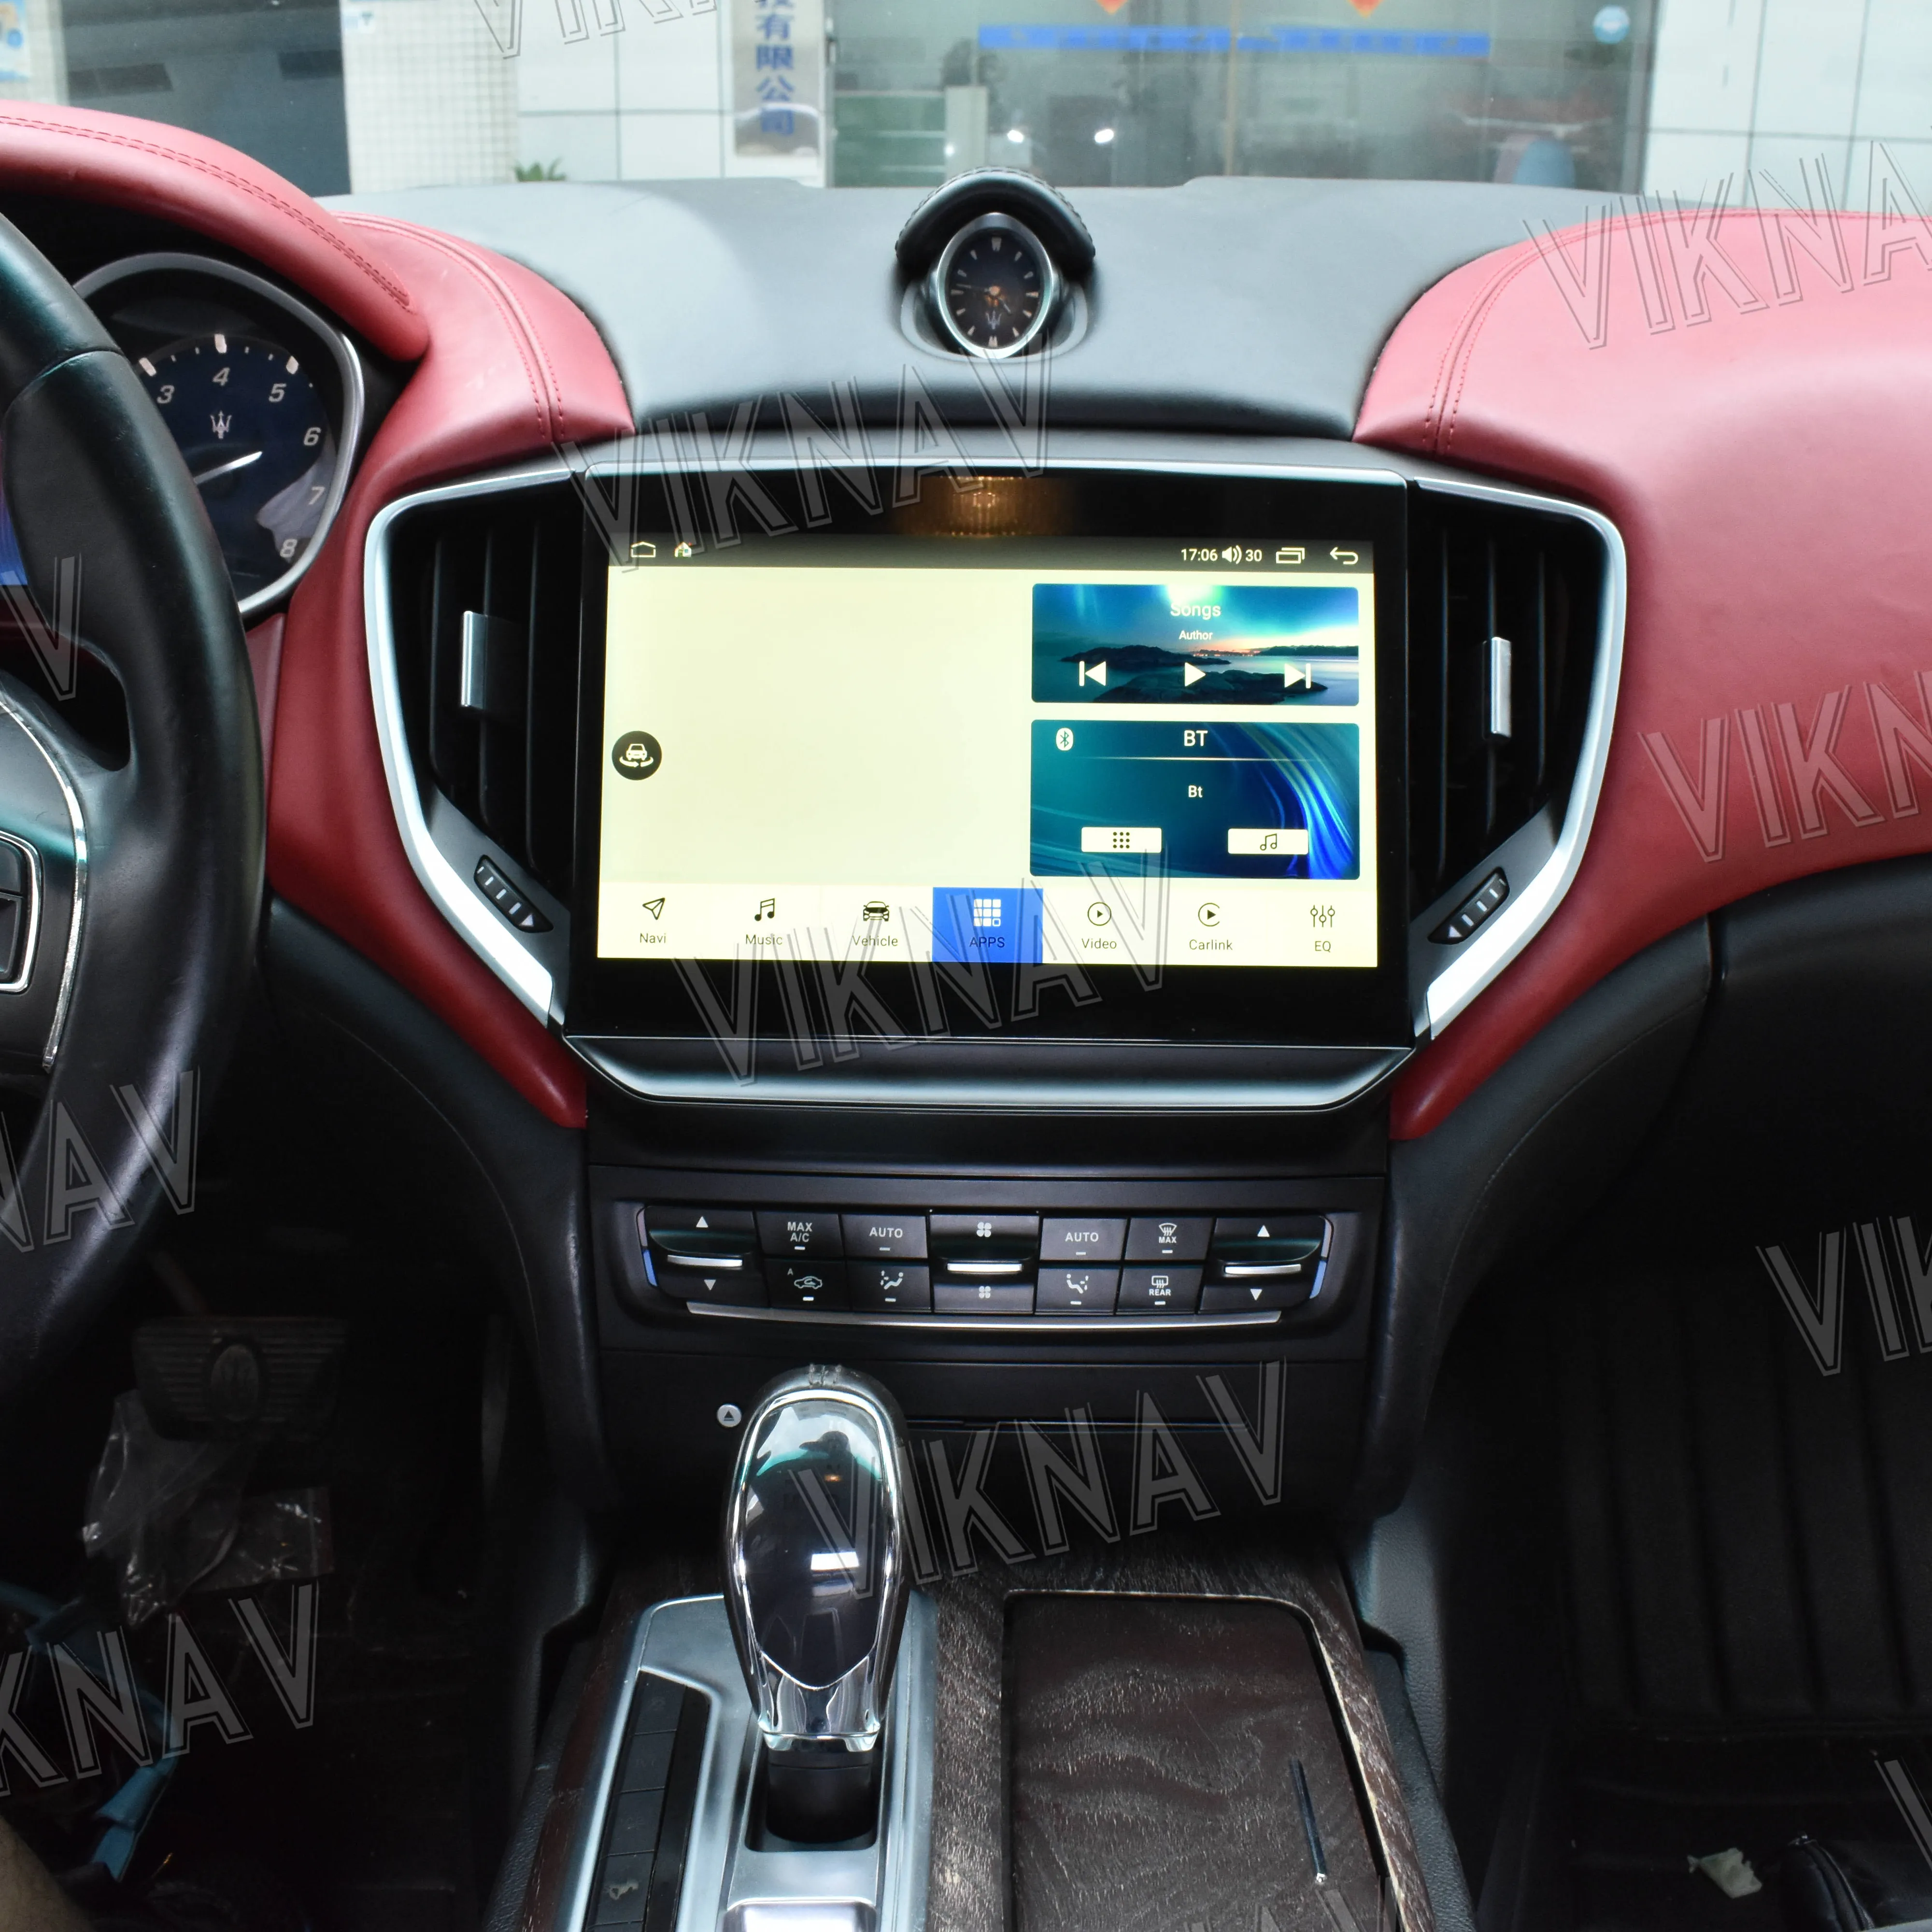 10.26 인치 자동차 라디오 마세라티 지브리 2014-IPS 화면 DVR WiFi carplay와 2017 안드로이드 GPS 네비게이션 멀티미디어 시스템